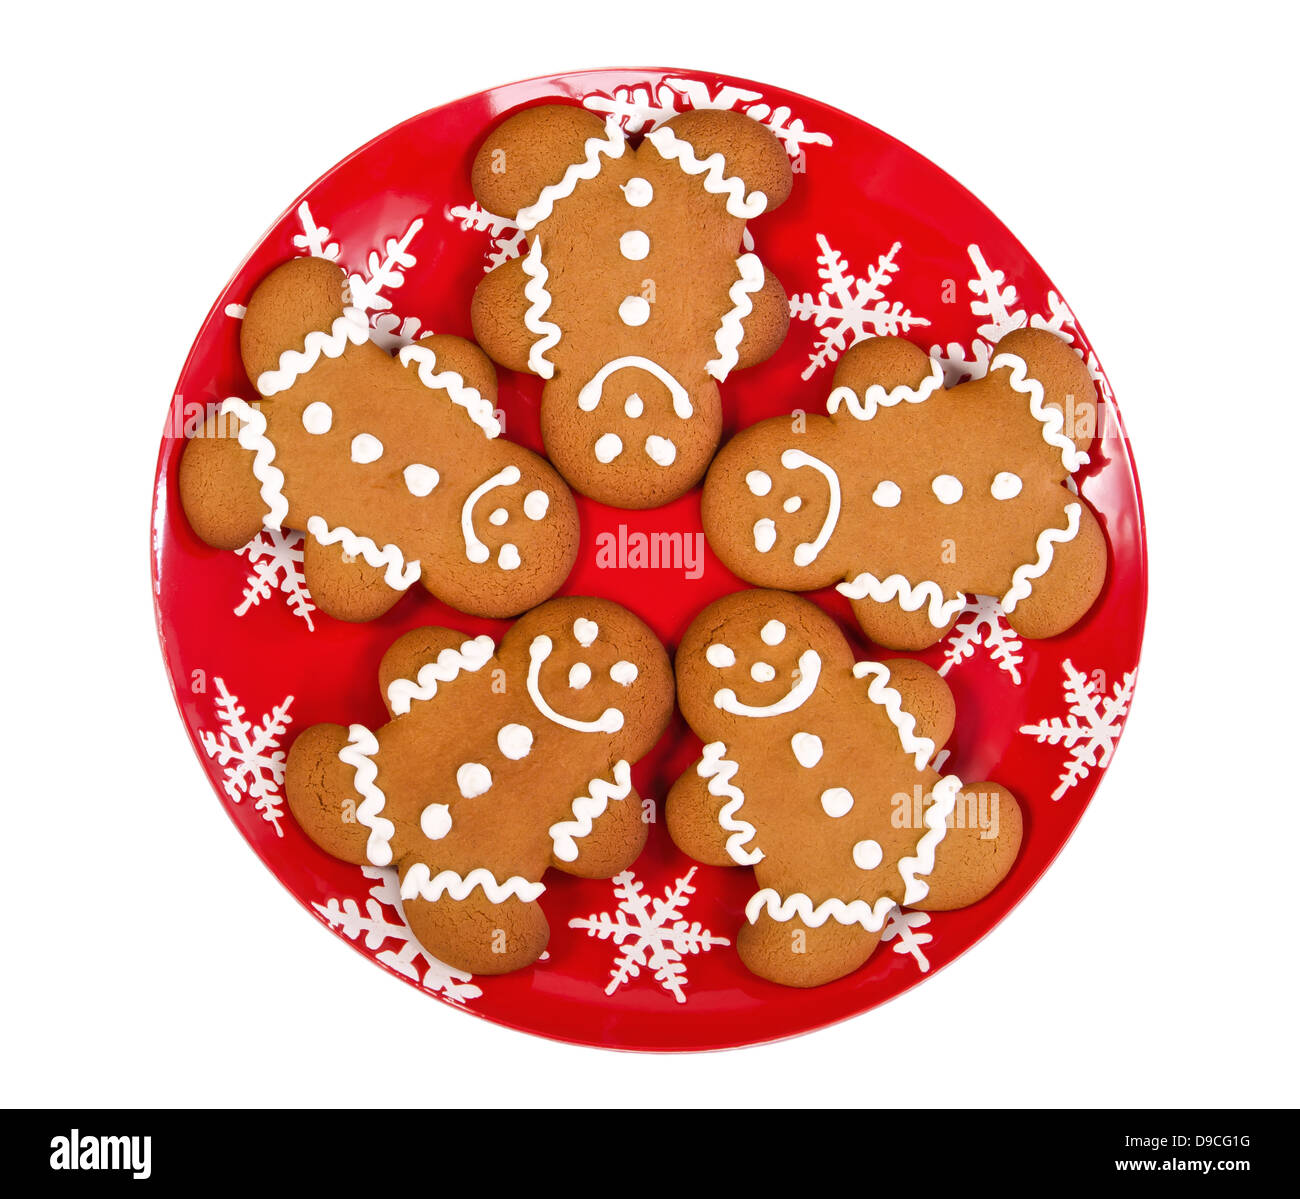 Gingerbread Man les cookies sur la plaque rouge de Noël, isolé sur fond blanc Banque D'Images